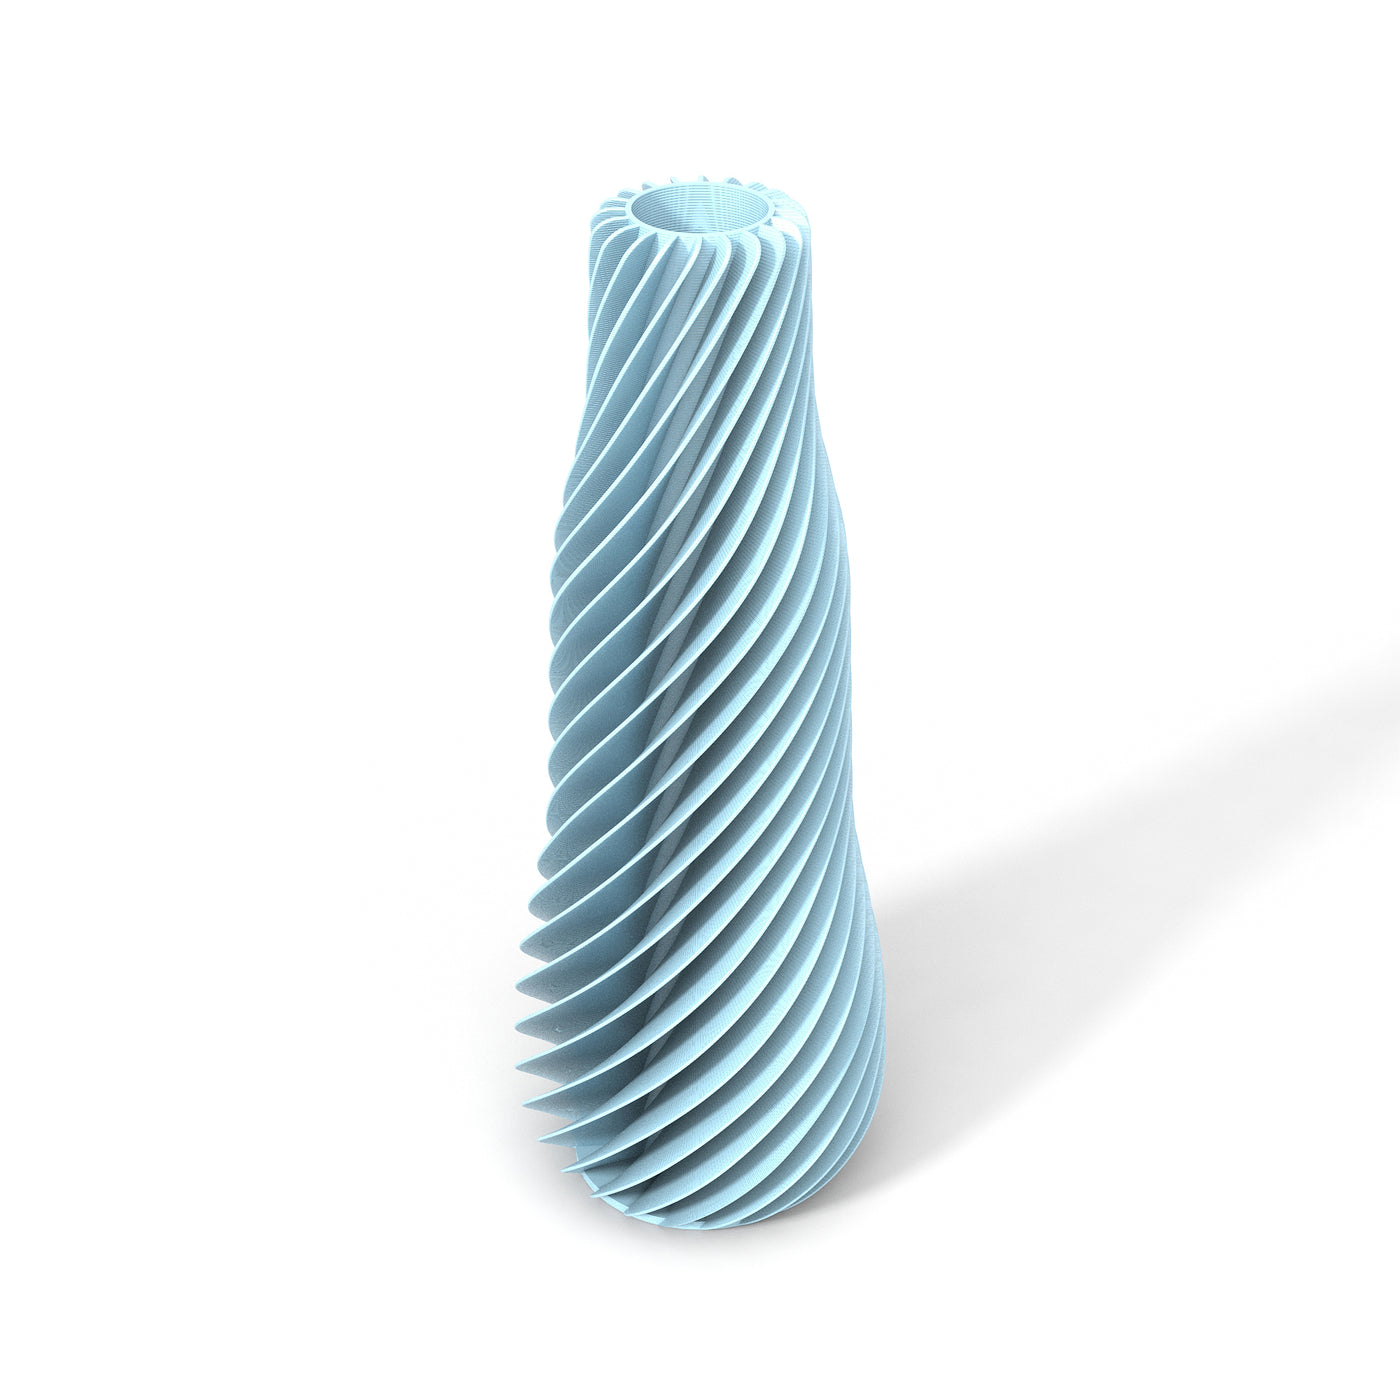 Světle modrá designová váza 3D print SPIRAL 1